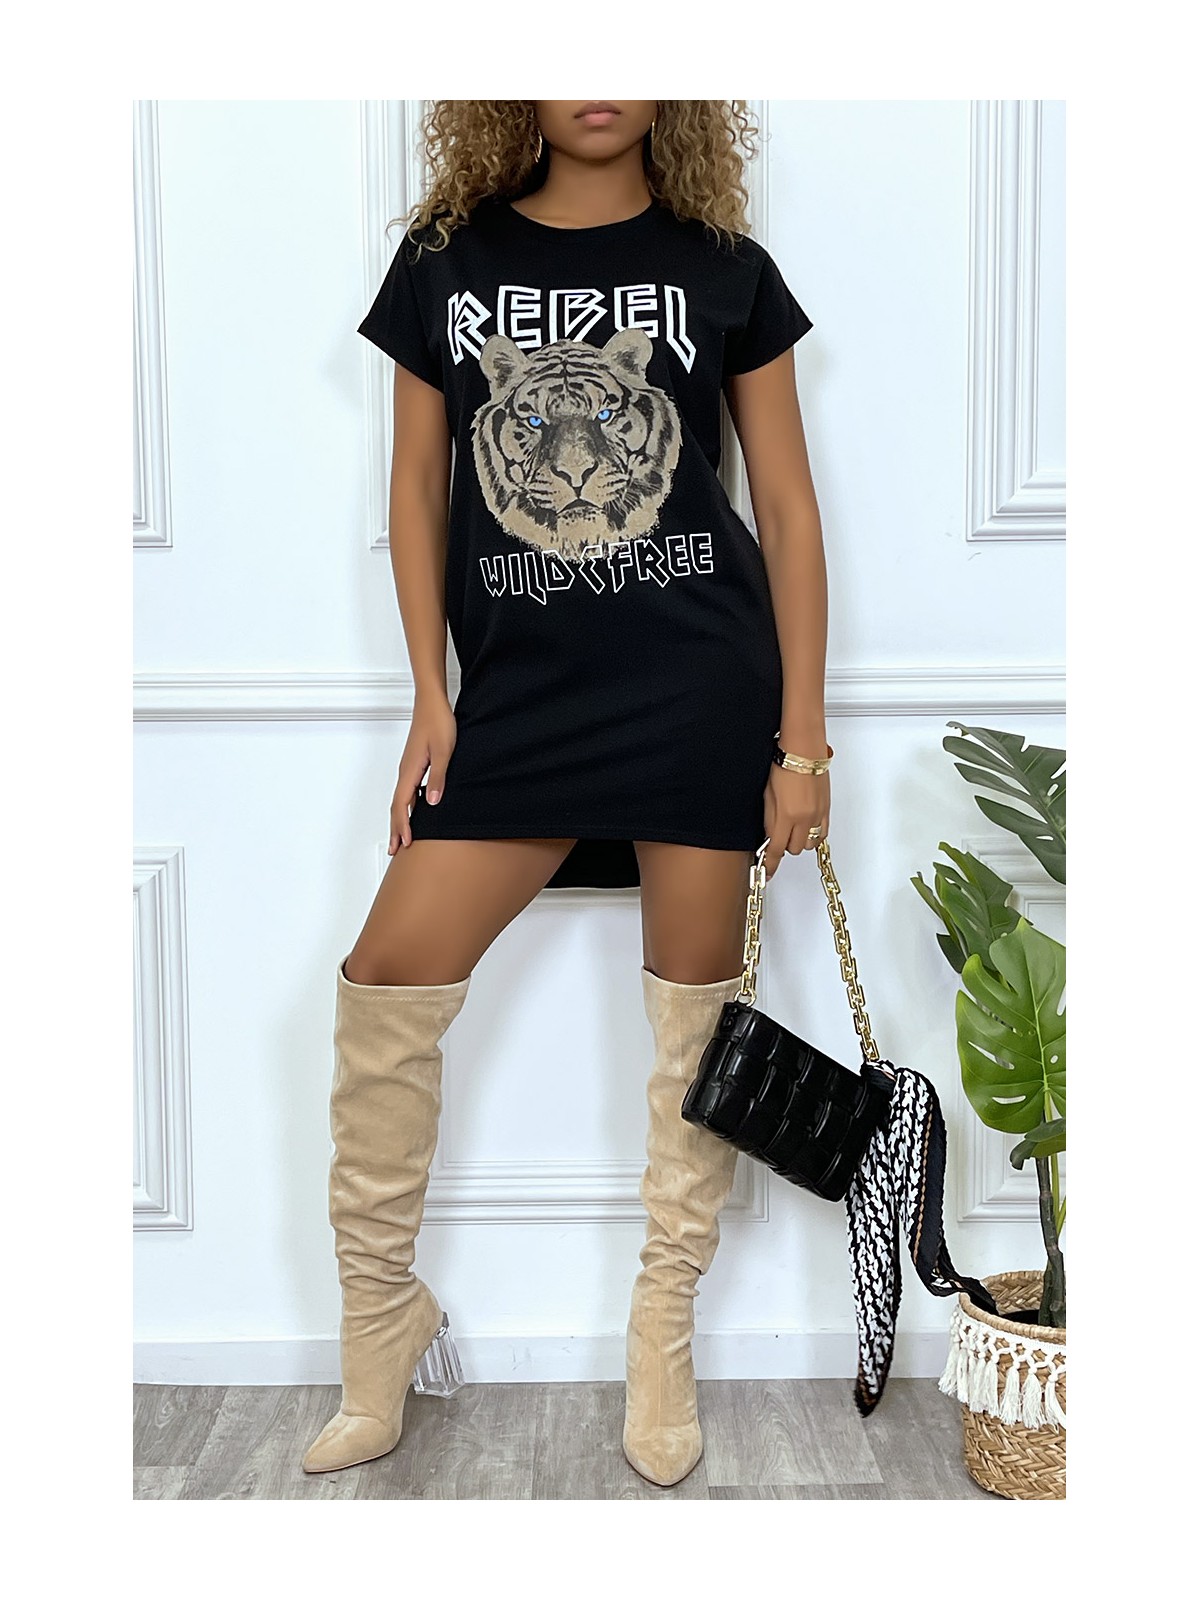 Robe t-shirt noir avec poches et écriture REBEL avec dessin de lion - 5